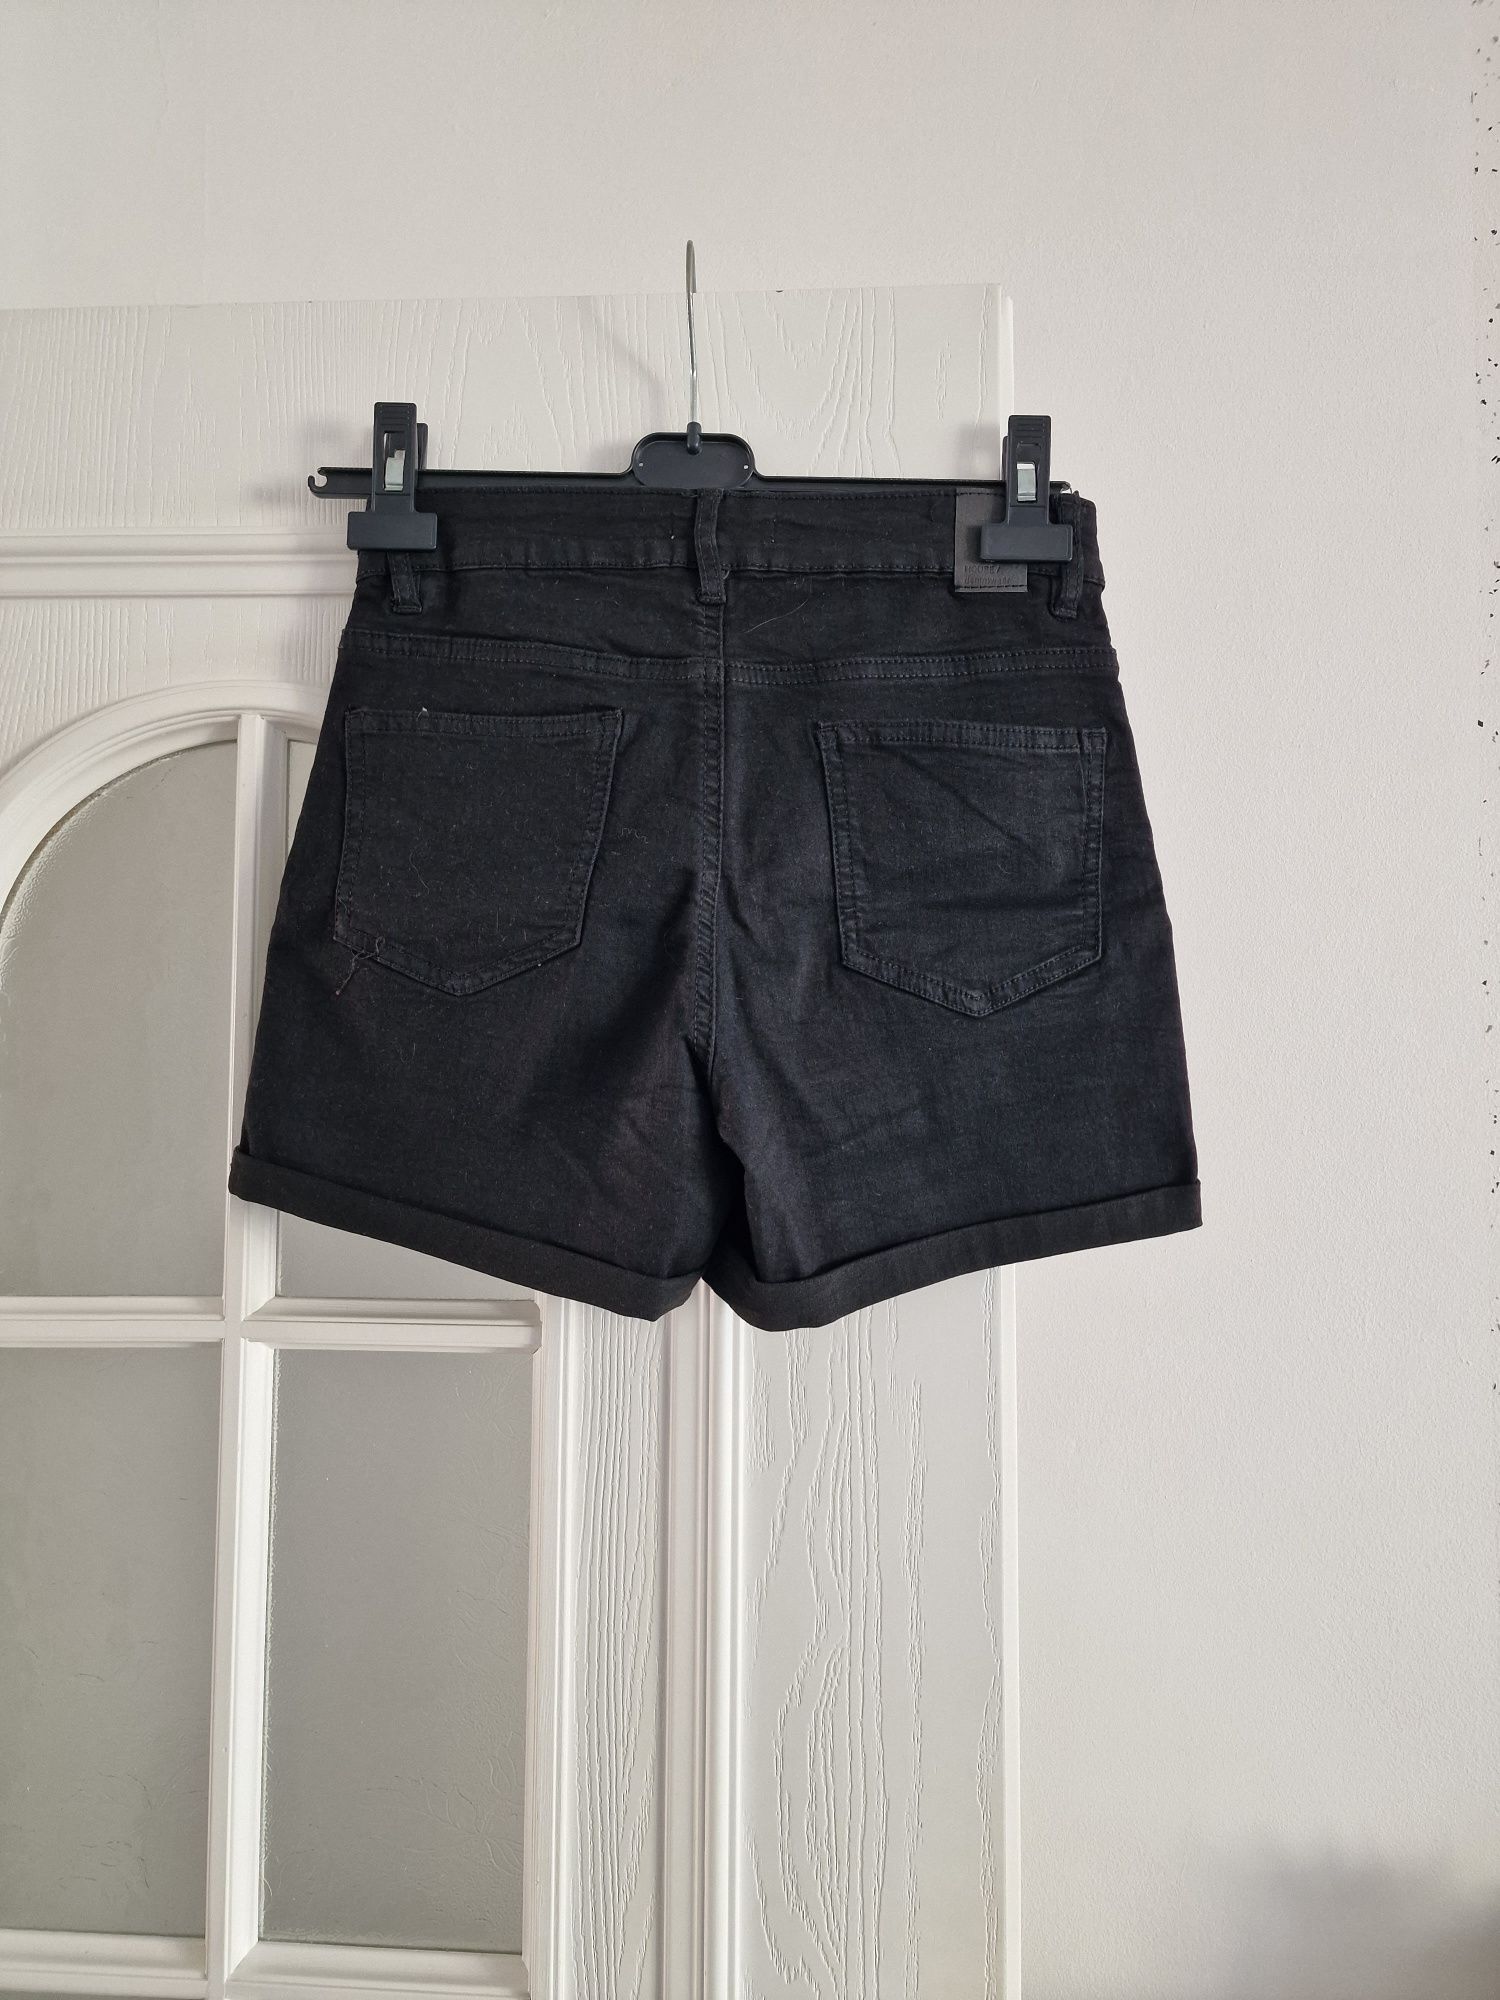 Spodnie/ spodenki damskie długie i krótkie w rozmiarze M